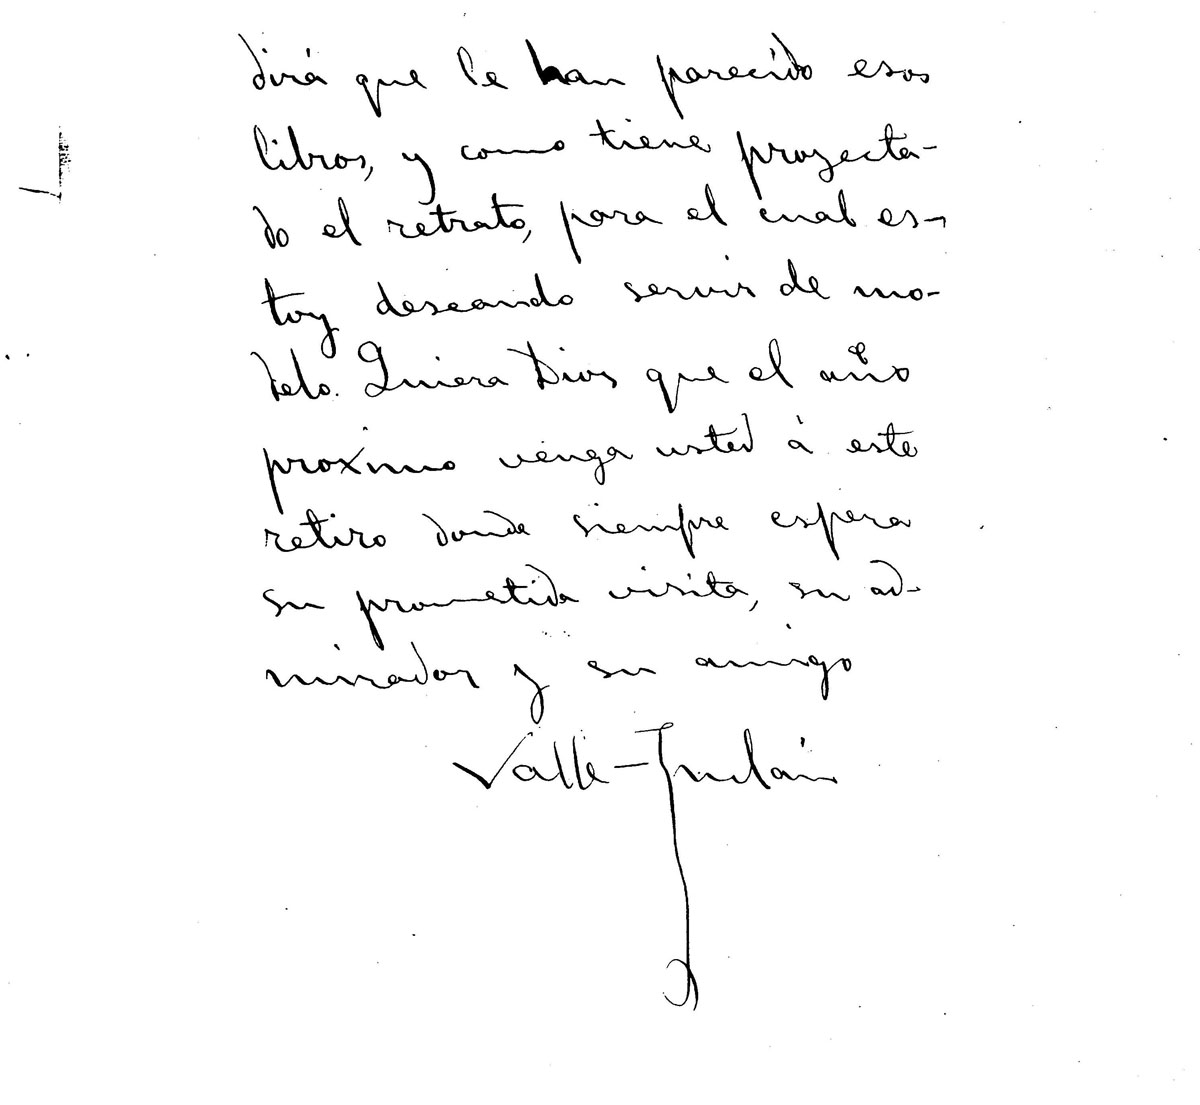 Carta de Valle-Inclán a Zuloaga, noviembre 1917